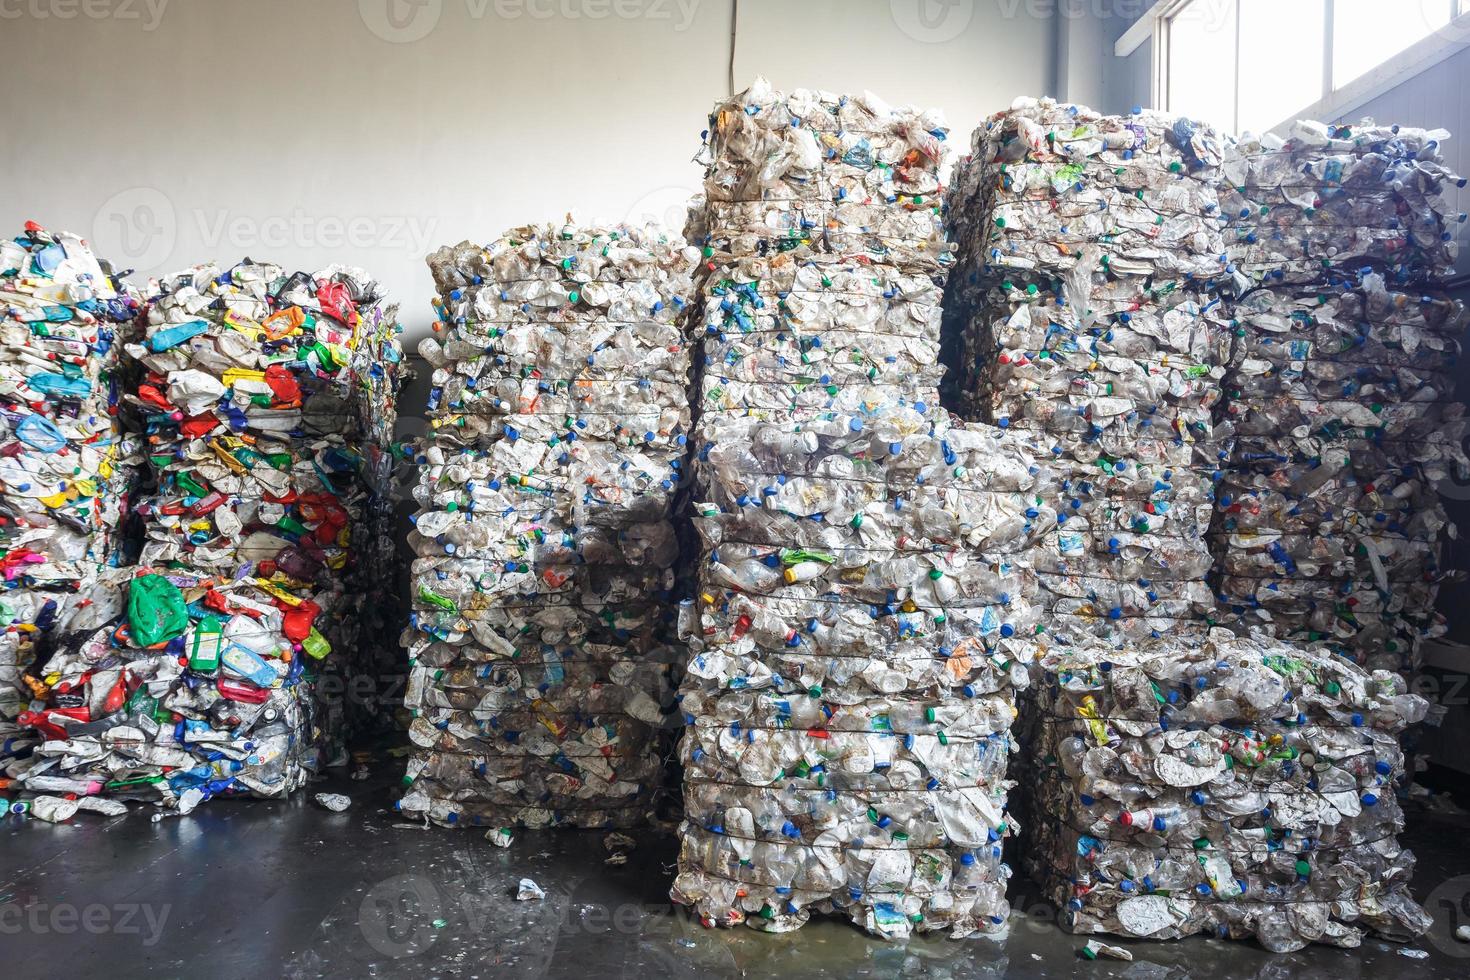 balles de plastique à l'usine de traitement des déchets. ramassage séparé des ordures. recyclage et stockage des déchets en vue de leur élimination ultérieure. entreprise de tri et de traitement des déchets. photo